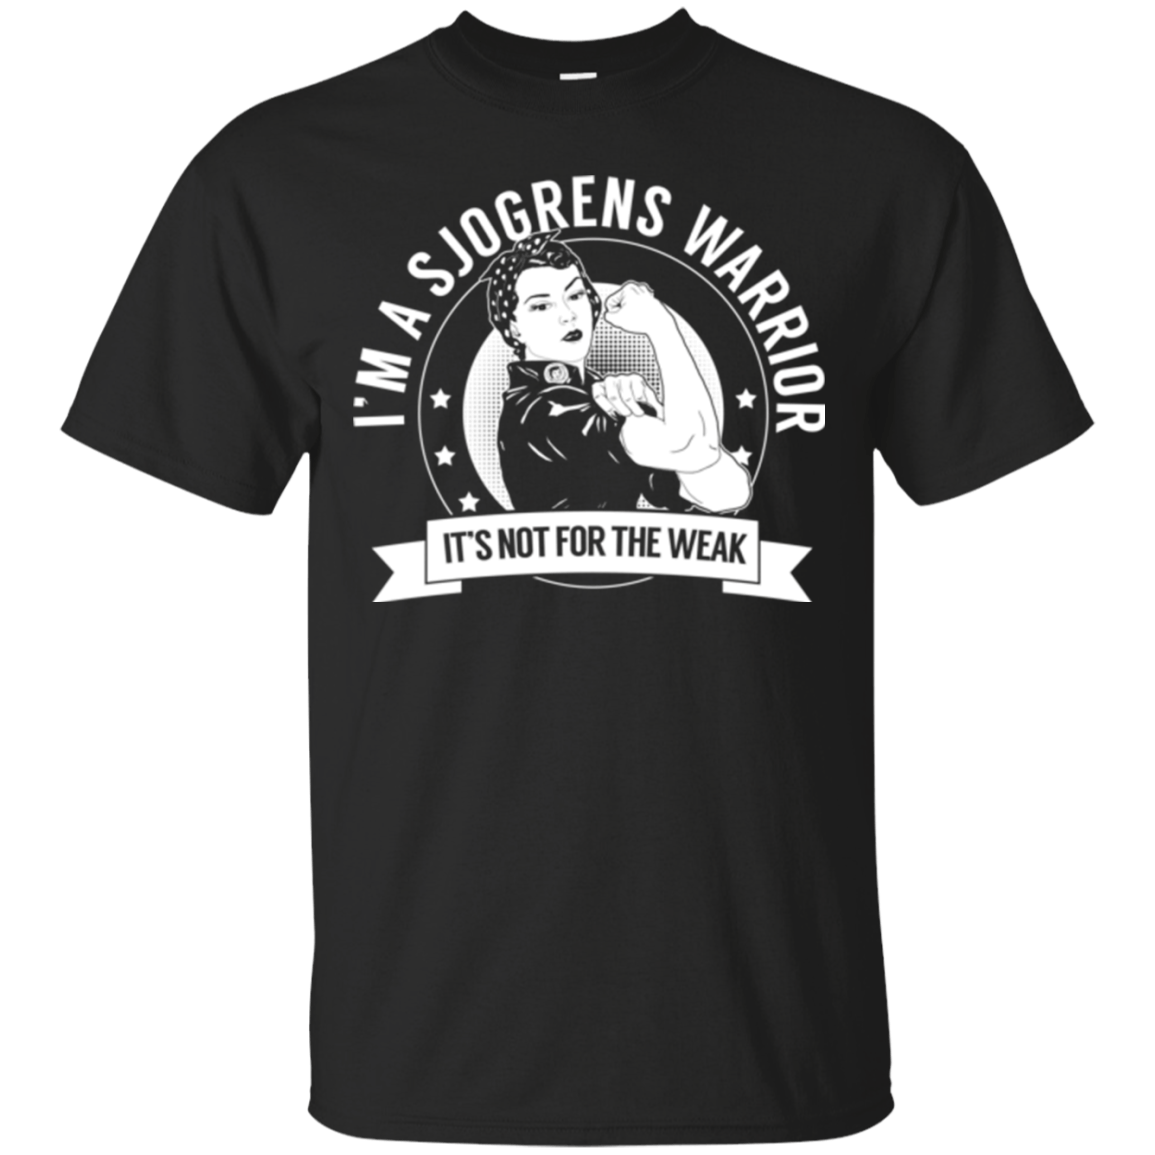 Sjogren's Syndrome - Sjogren's Warrior Not For The Weak Cotton T-Shirt - The Unchargeables